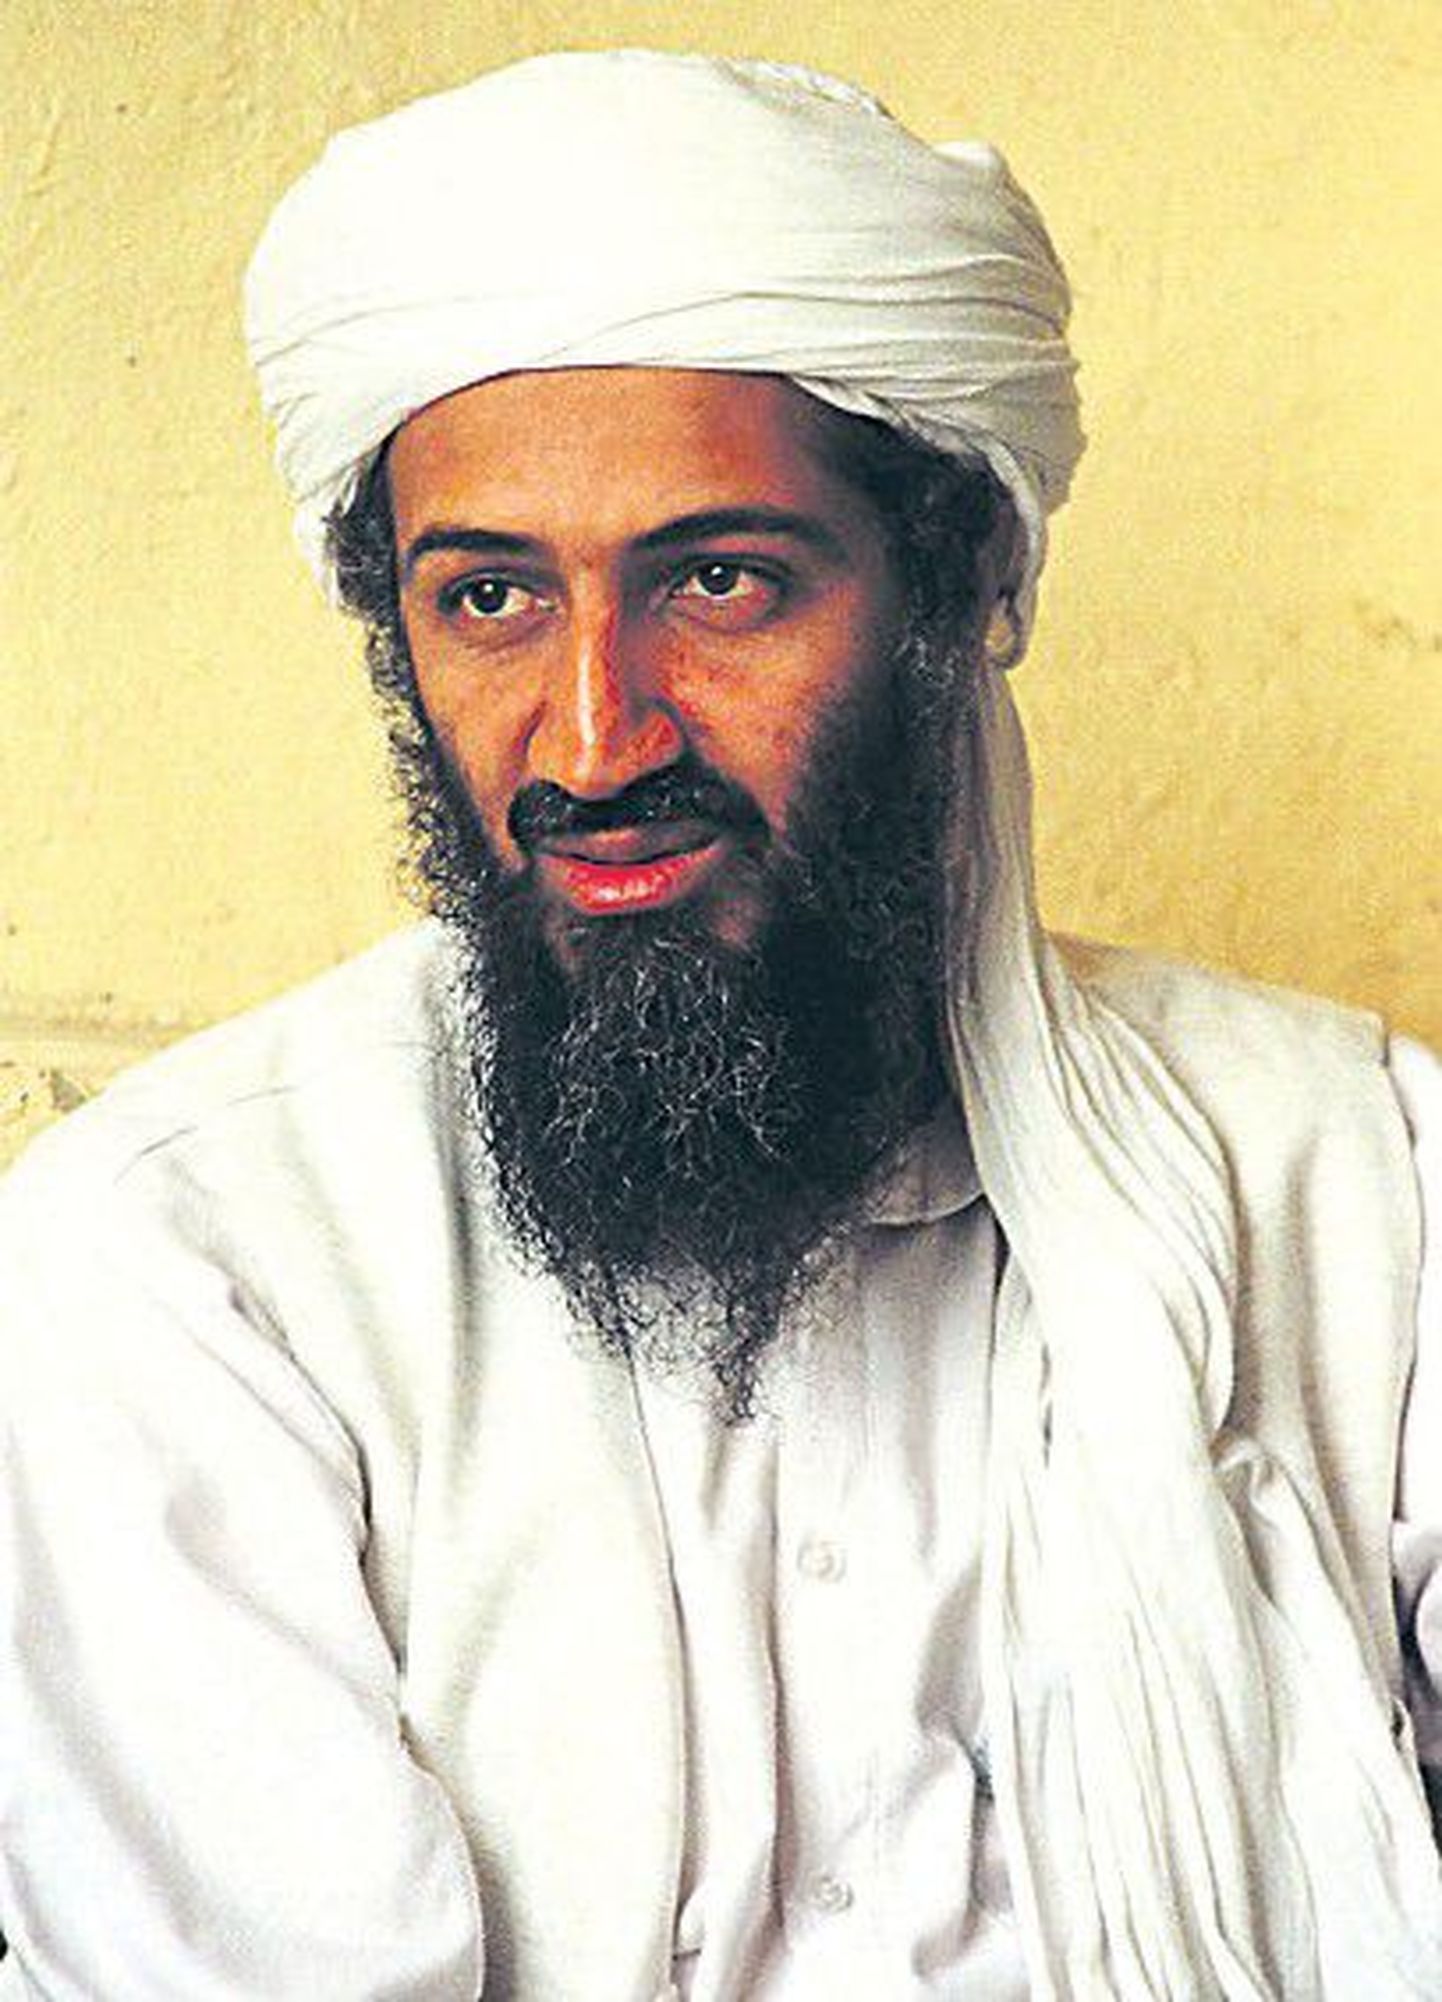 Согласно опубликованным данным ЦРУ, террористы, выходцы из Йемена, намеревались взорвать бомбу на борту лайнера, который следовал в США или из США. Данный теракт планировалось приурочить к годовщине гибели главы «Аль-Каиды» Усамы бин Ладена, ликвидированного 2 мая.